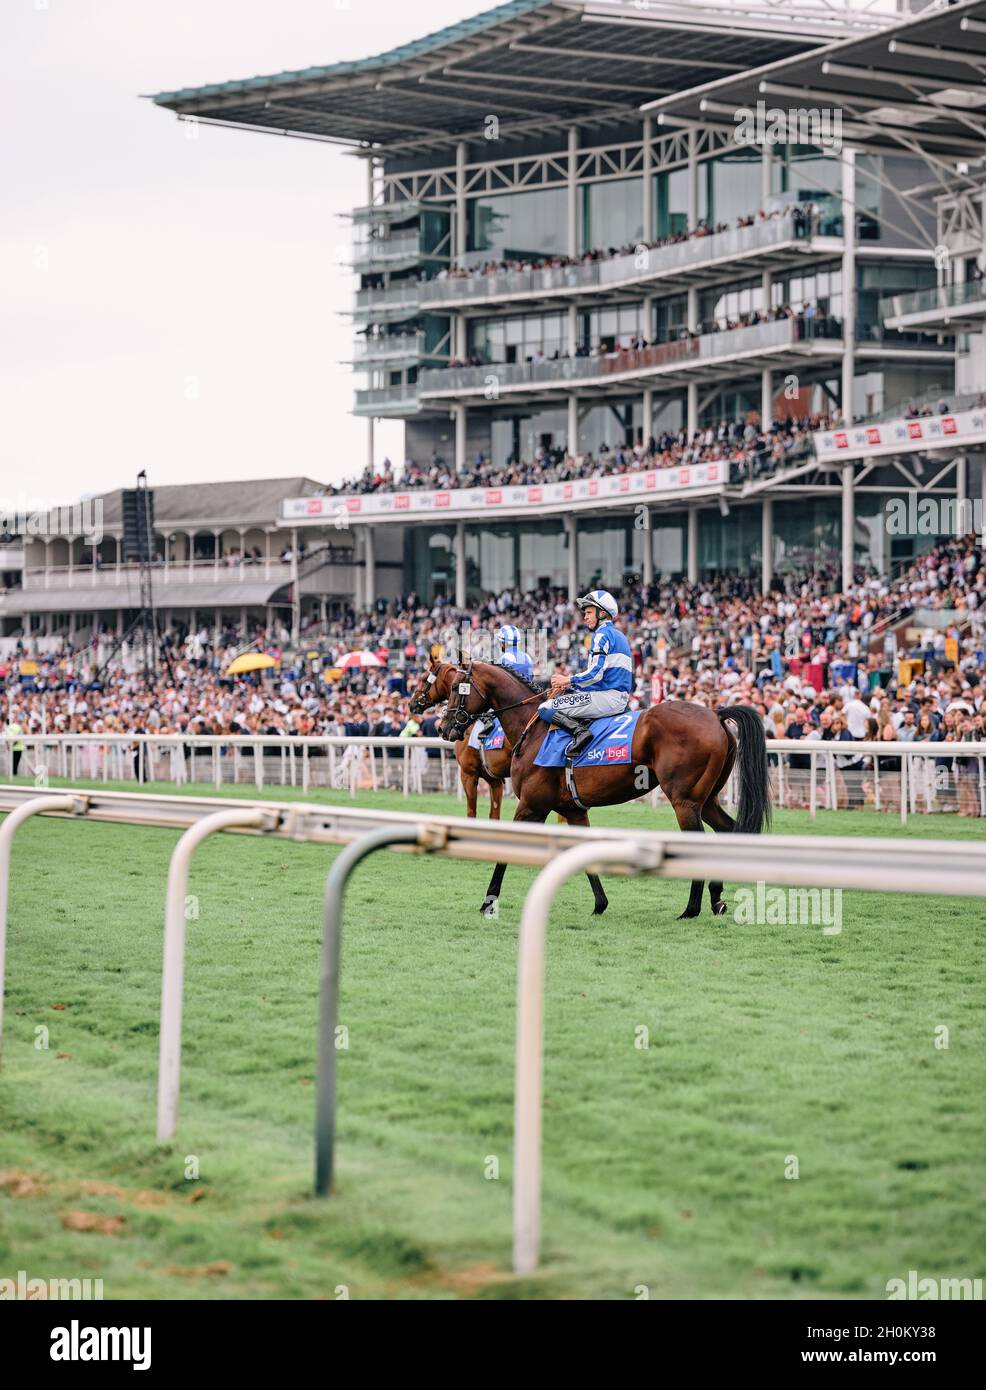 Pferde und Jockeys vor einer Tribüne - Ein Tag Pferderennen auf einem Sommerwochenende Veranstaltung auf der York Racecourse York, Yorkshire, England 2021 Stockfoto